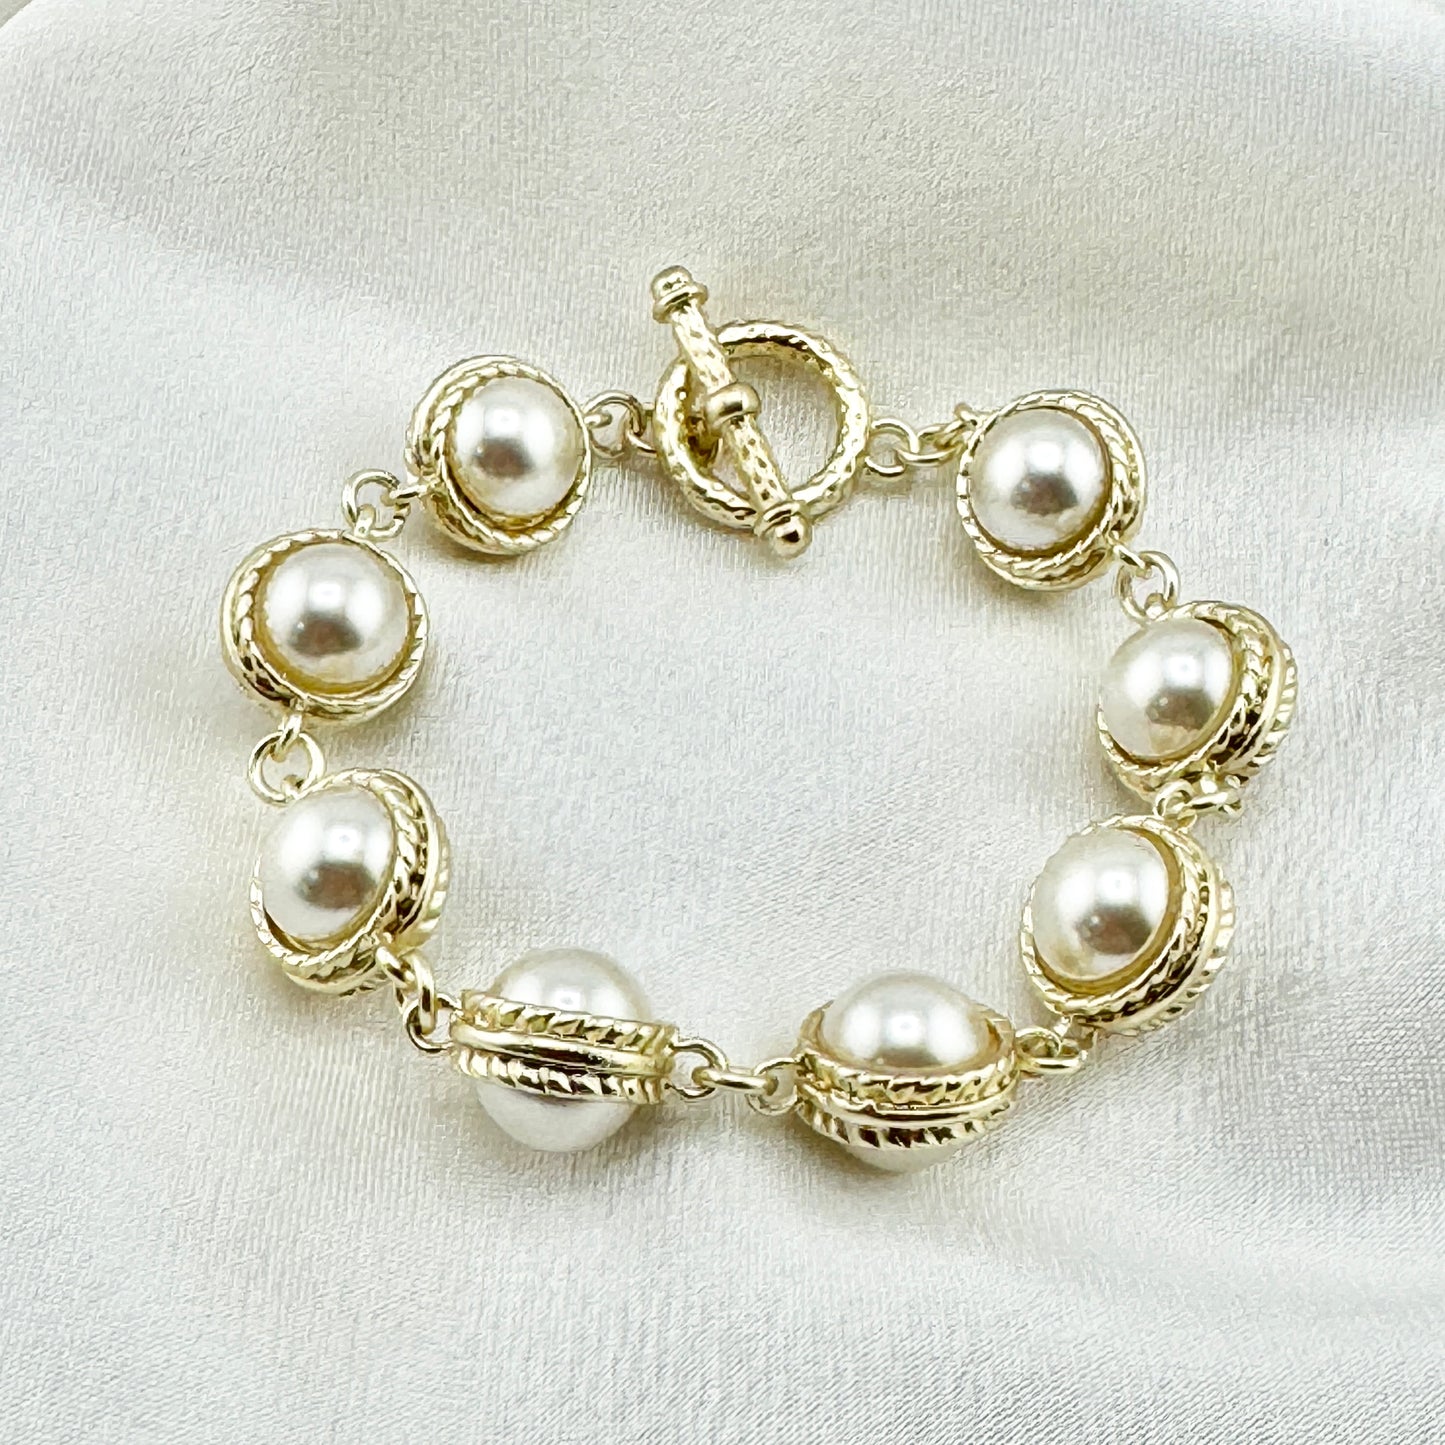 Rumania pearl bracelet